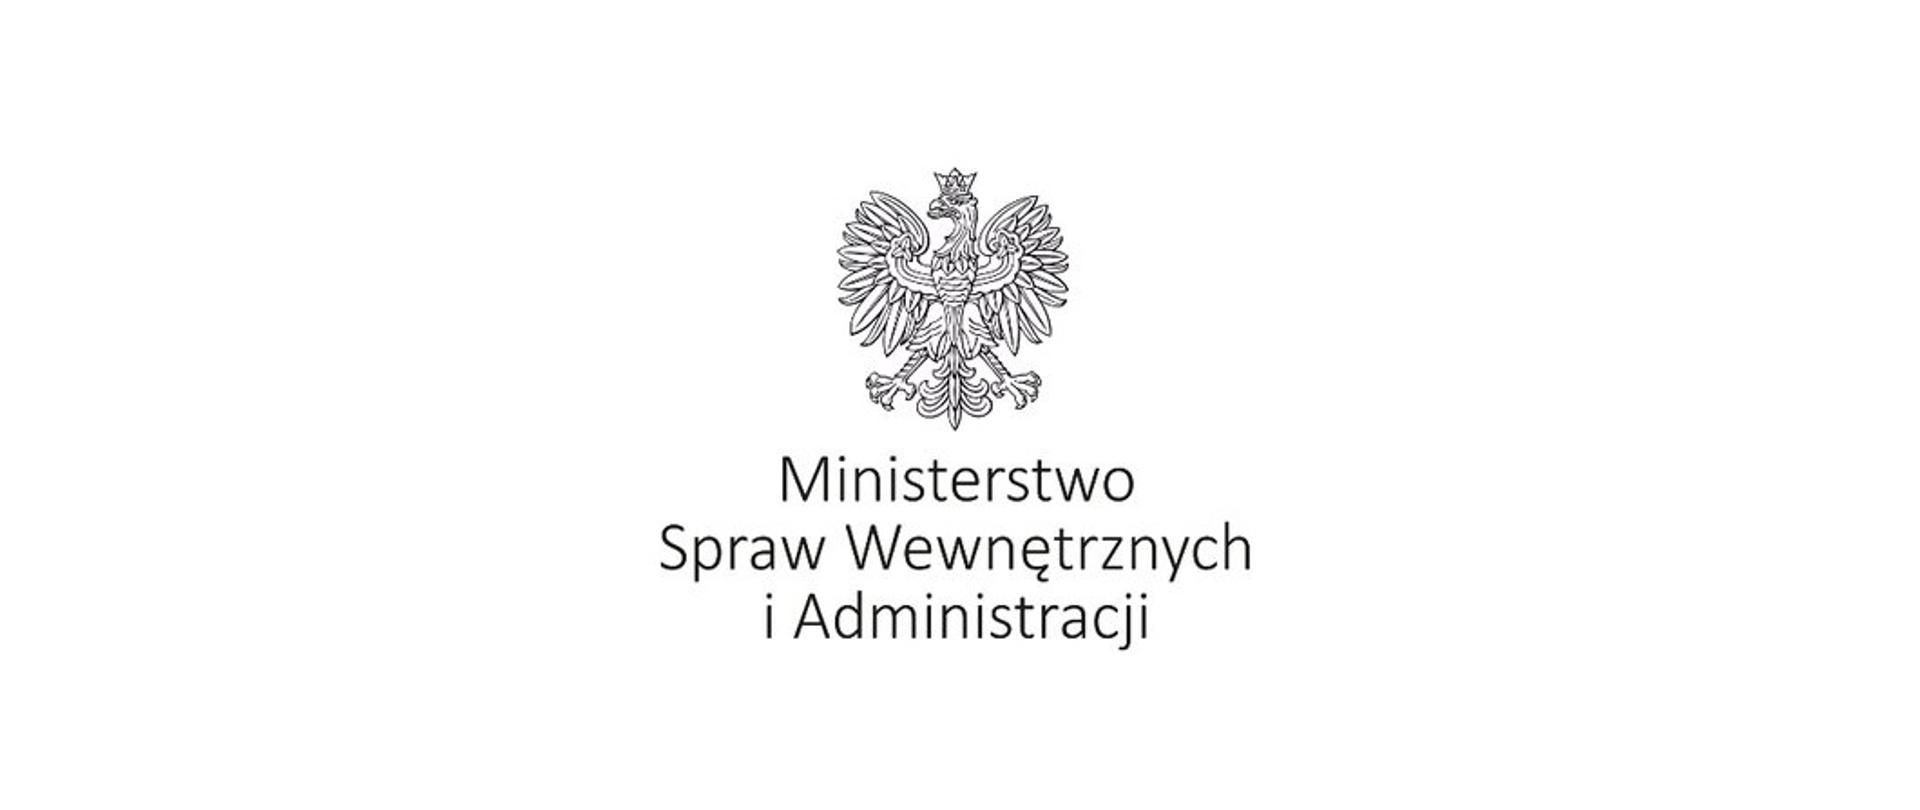 Zdjęcie przedstawia logo Ministerstwa Spraw Wewnętrznych i Administracji